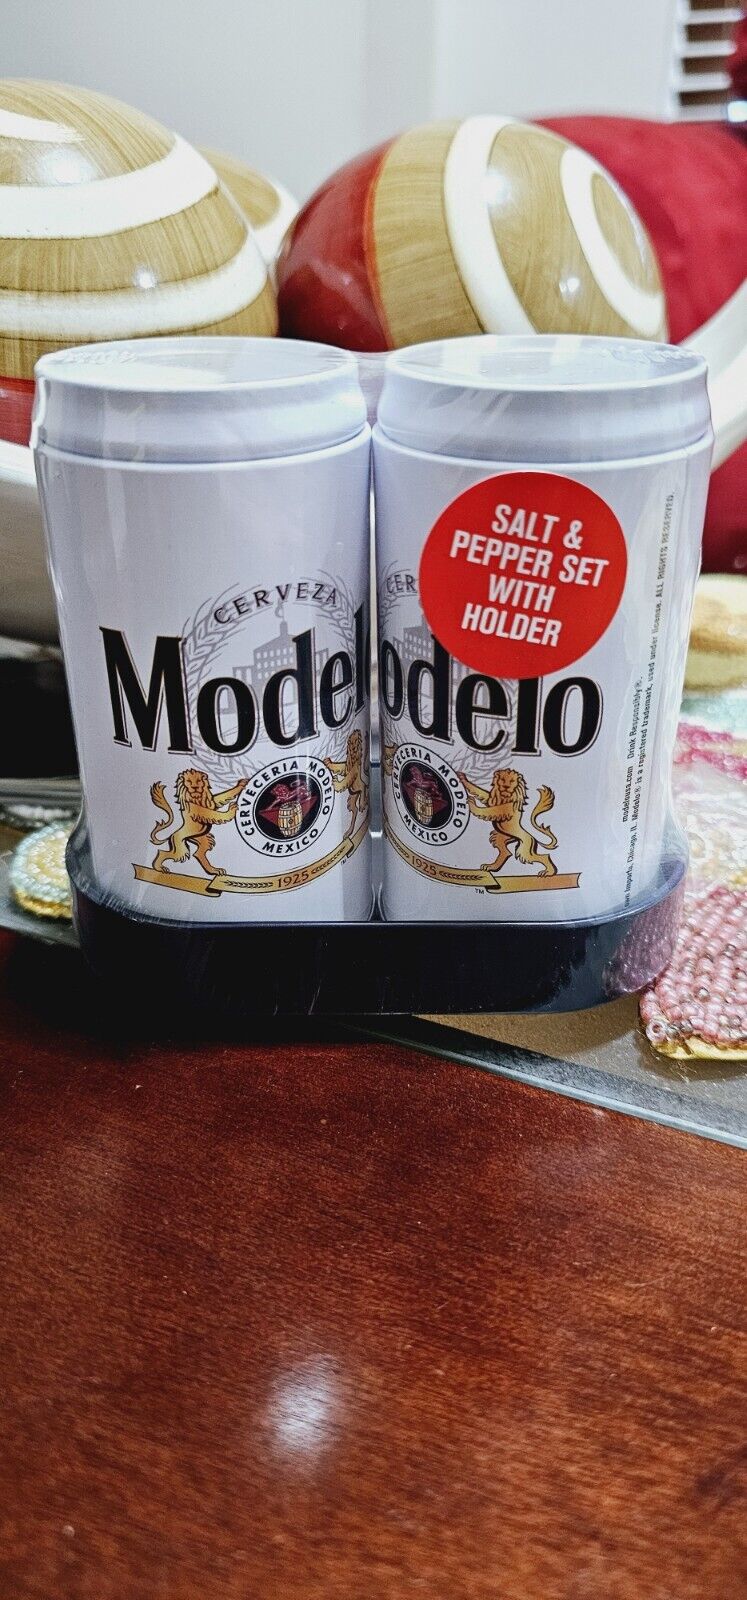 Cerveza (beer) Modelo  Salt & Pepper Shakers. Mini Cans 1 Set